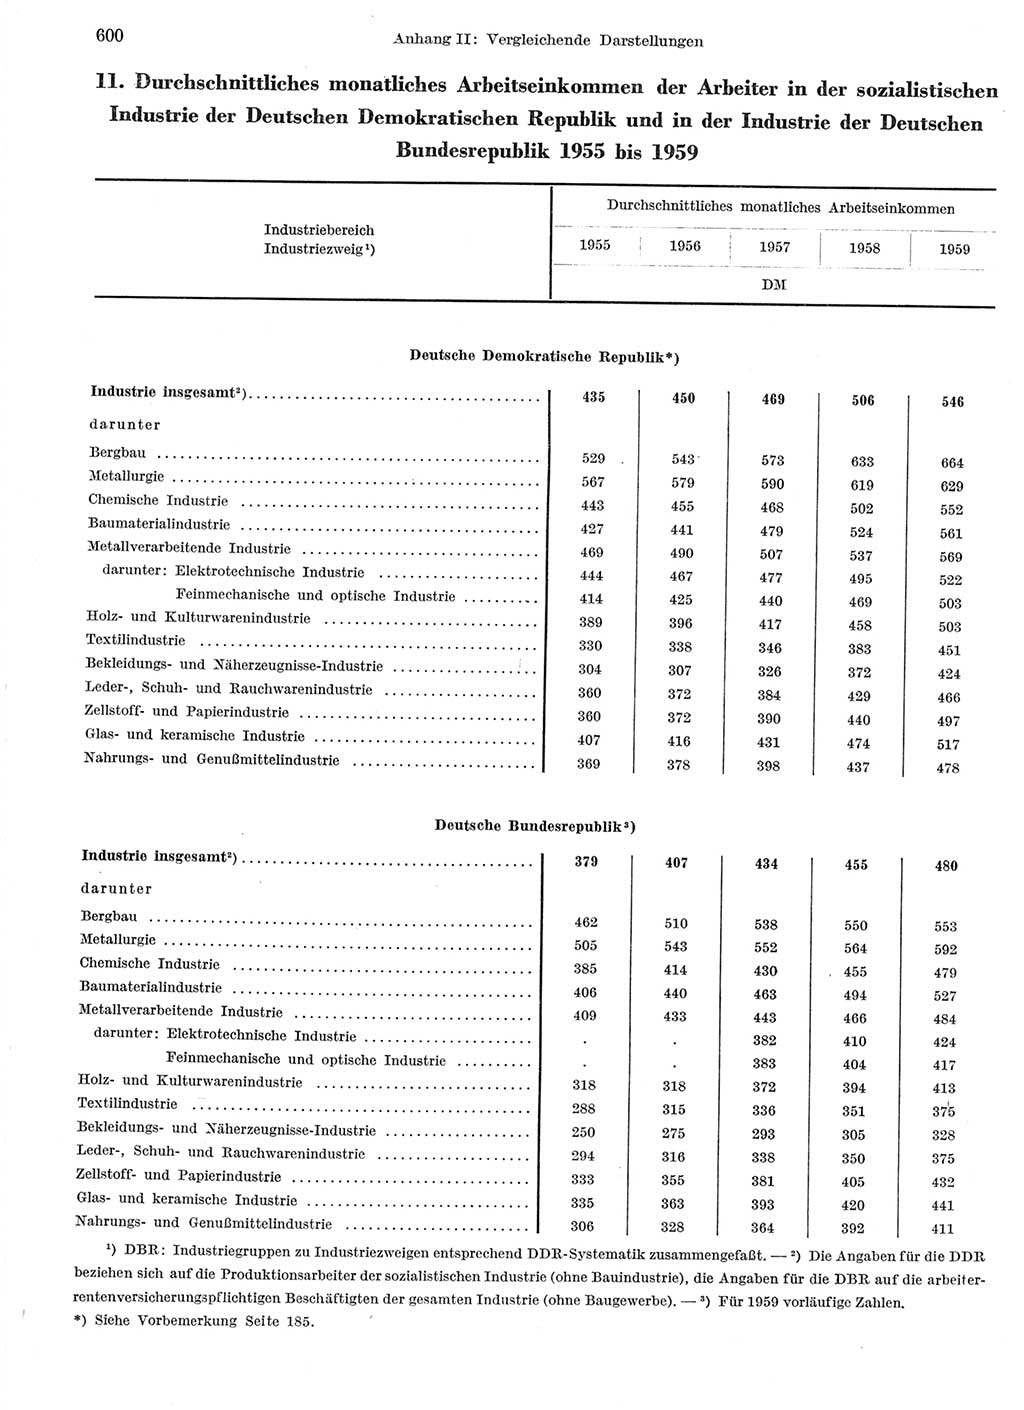 Statistisches Jahrbuch der Deutschen Demokratischen Republik (DDR) 1959, Seite 600 (Stat. Jb. DDR 1959, S. 600)